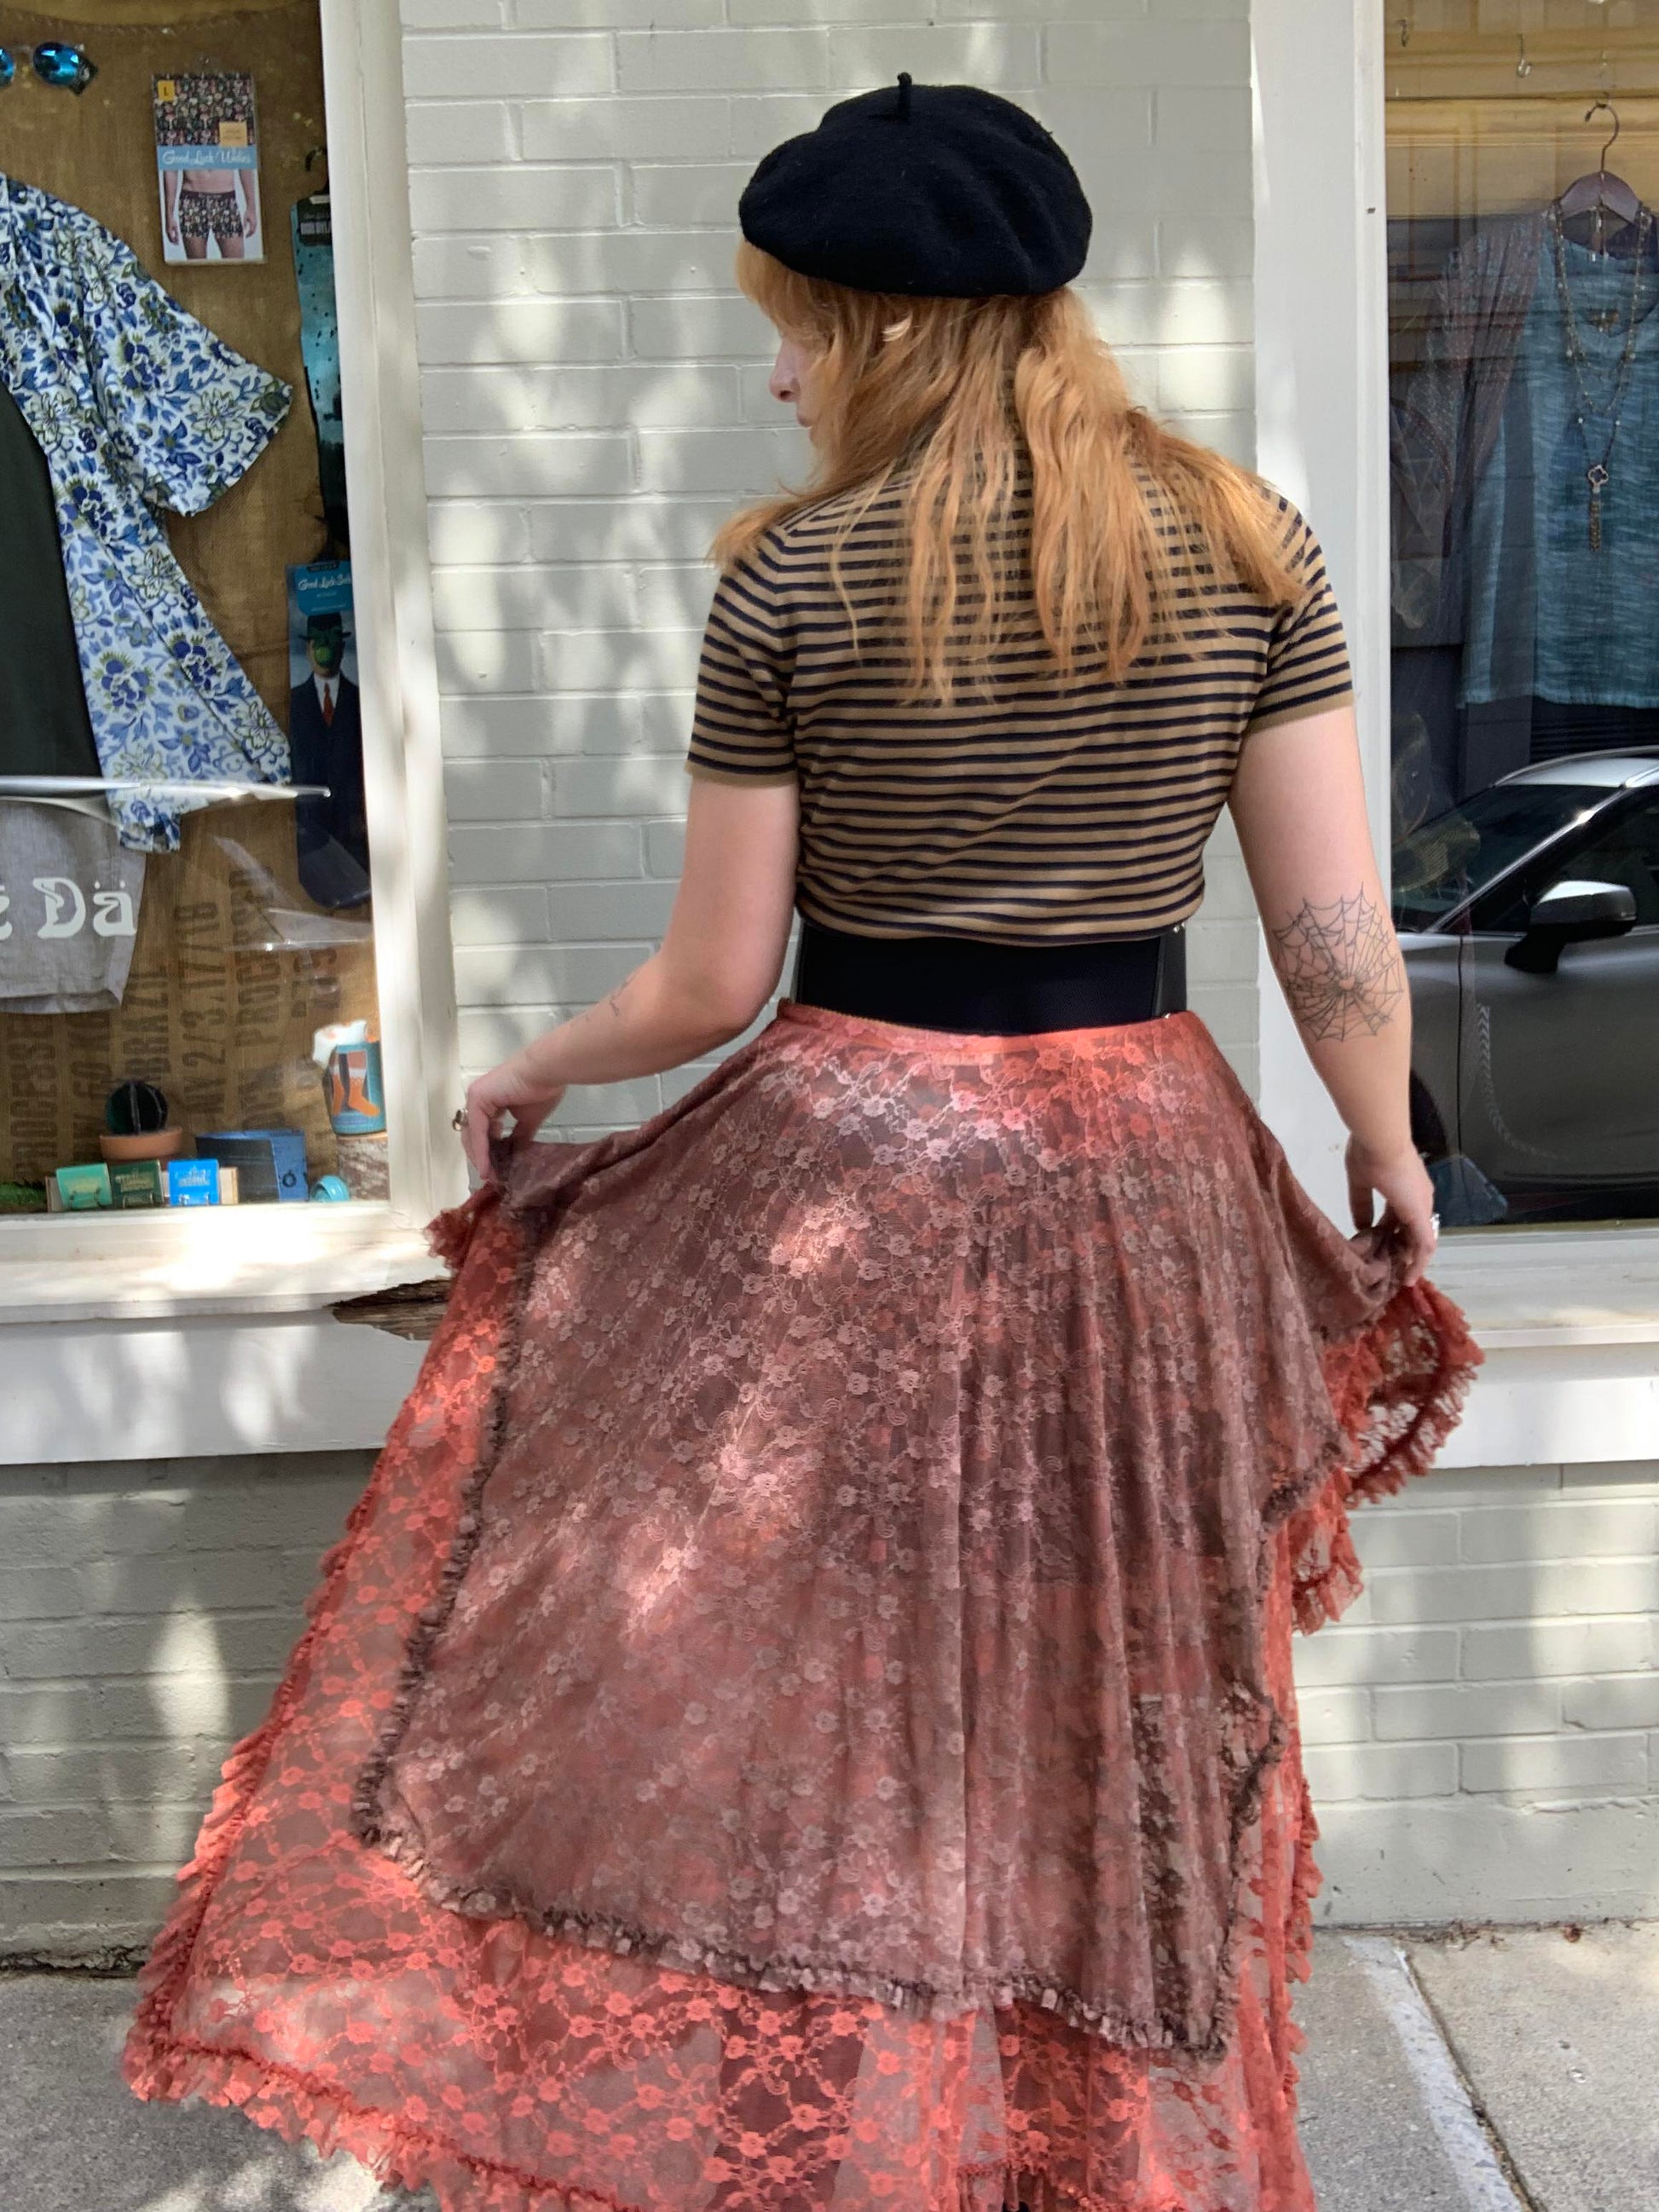 Custom Dyed Slip Skirt - La De Da